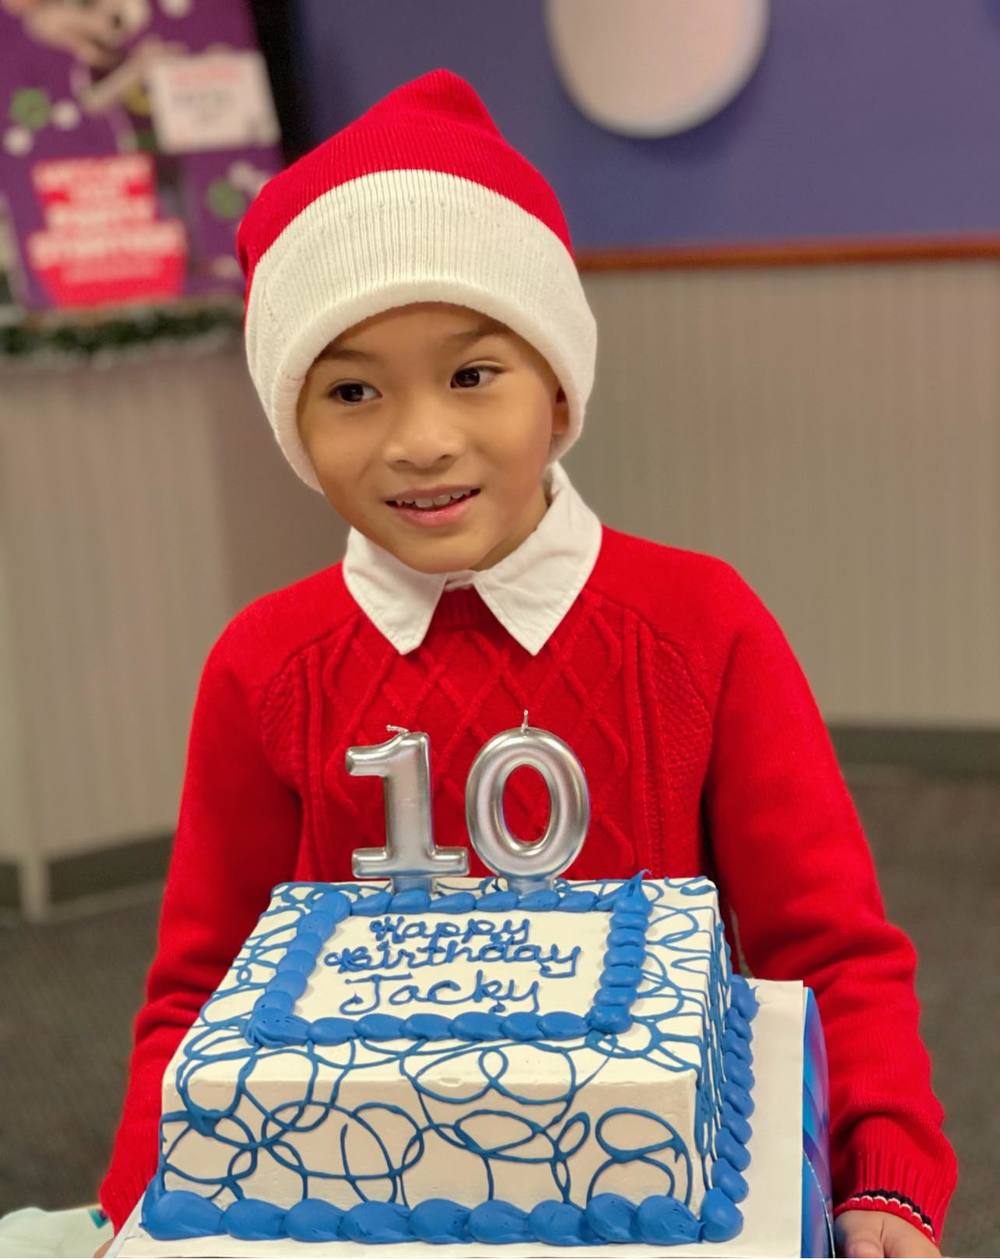  
Sinh nhật 10 tuổi của con trai Ngô Kiến Huy được ca sĩ Thanh Thảo tổ chức tại Mỹ. - Tin sao Viet - Tin tuc sao Viet - Scandal sao Viet - Tin tuc cua Sao - Tin cua Sao